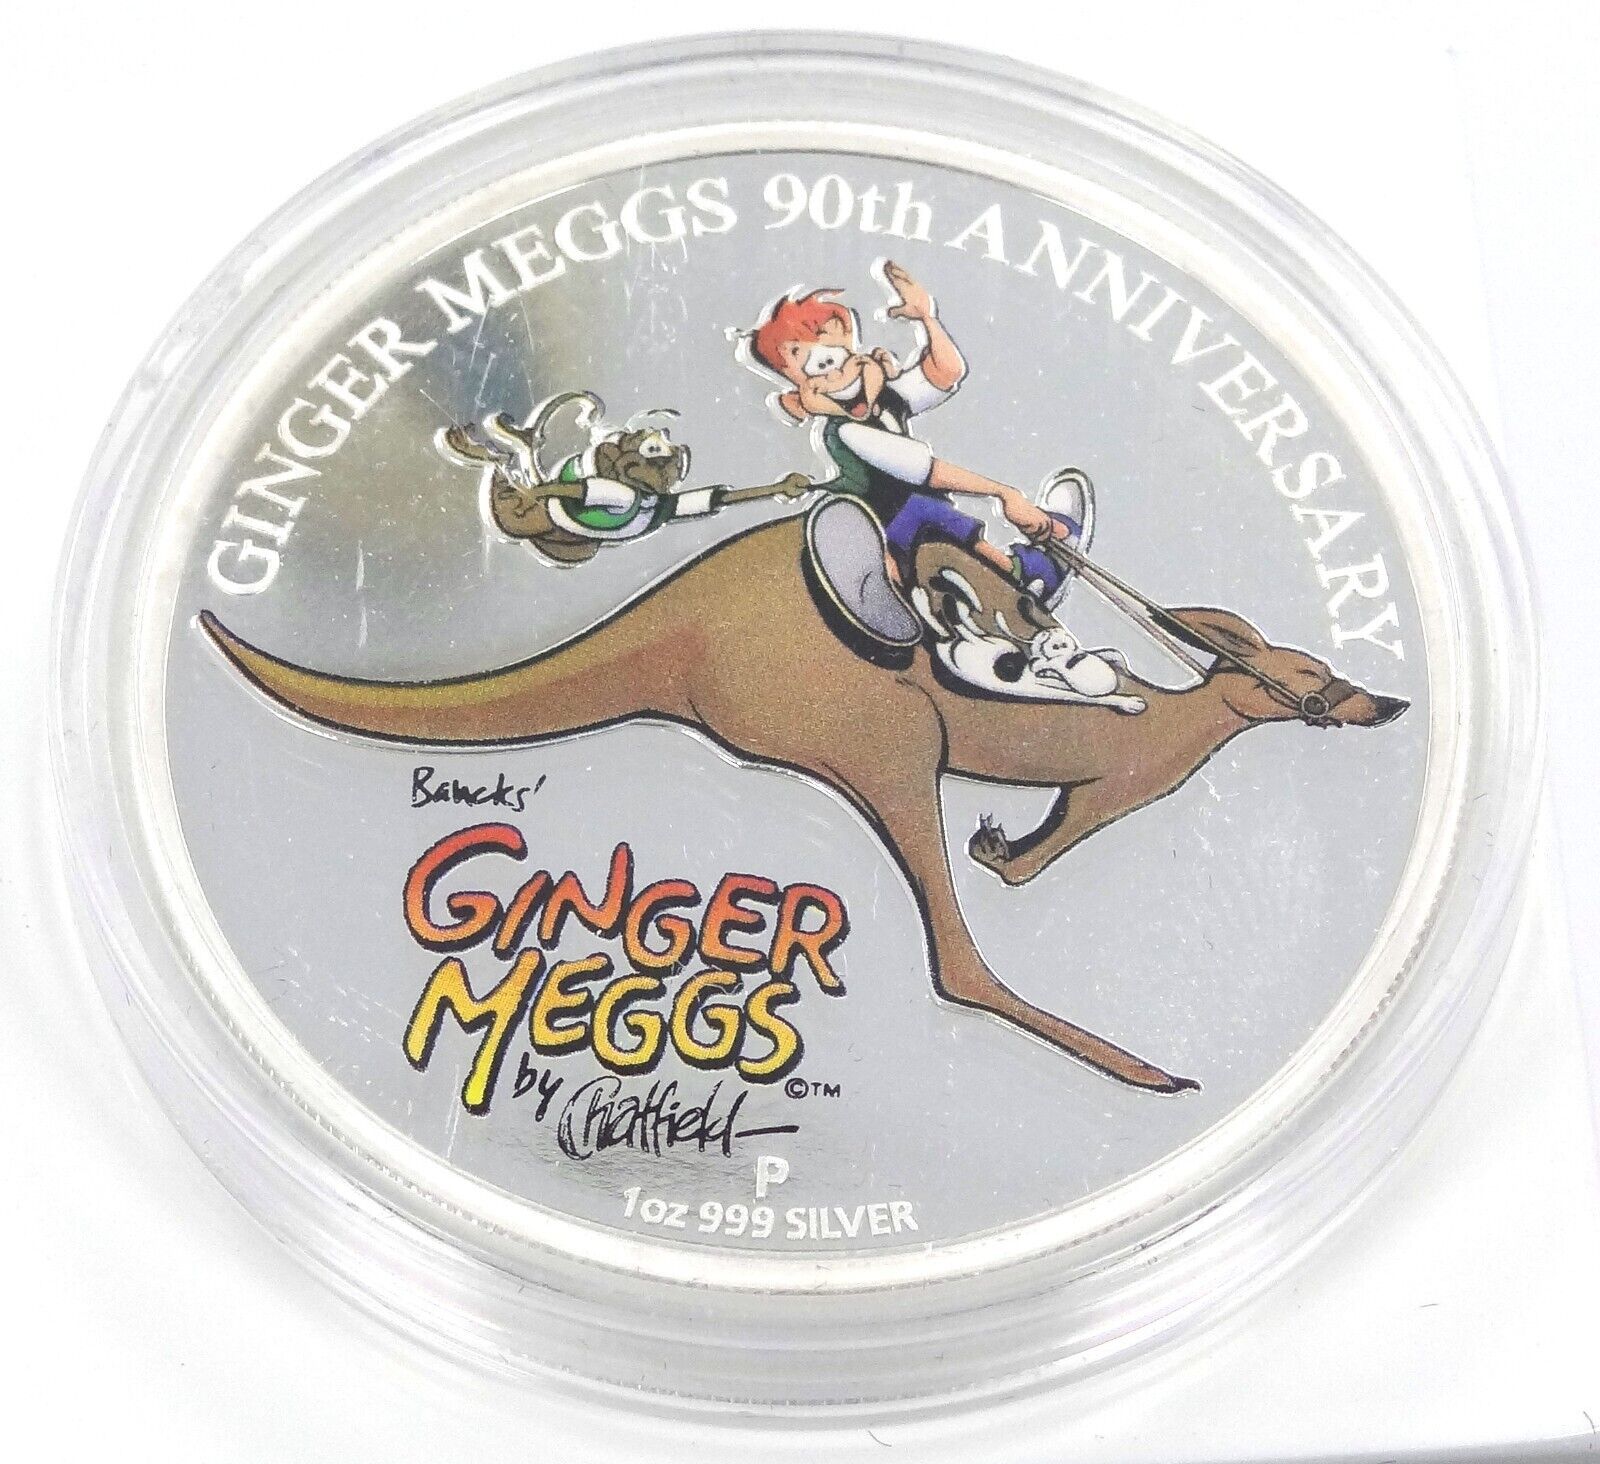 1 Oz Silver Coin 2011 $1 Australia Colored Ginger Meggs 90th Anniversary Proof-classypw.com-1